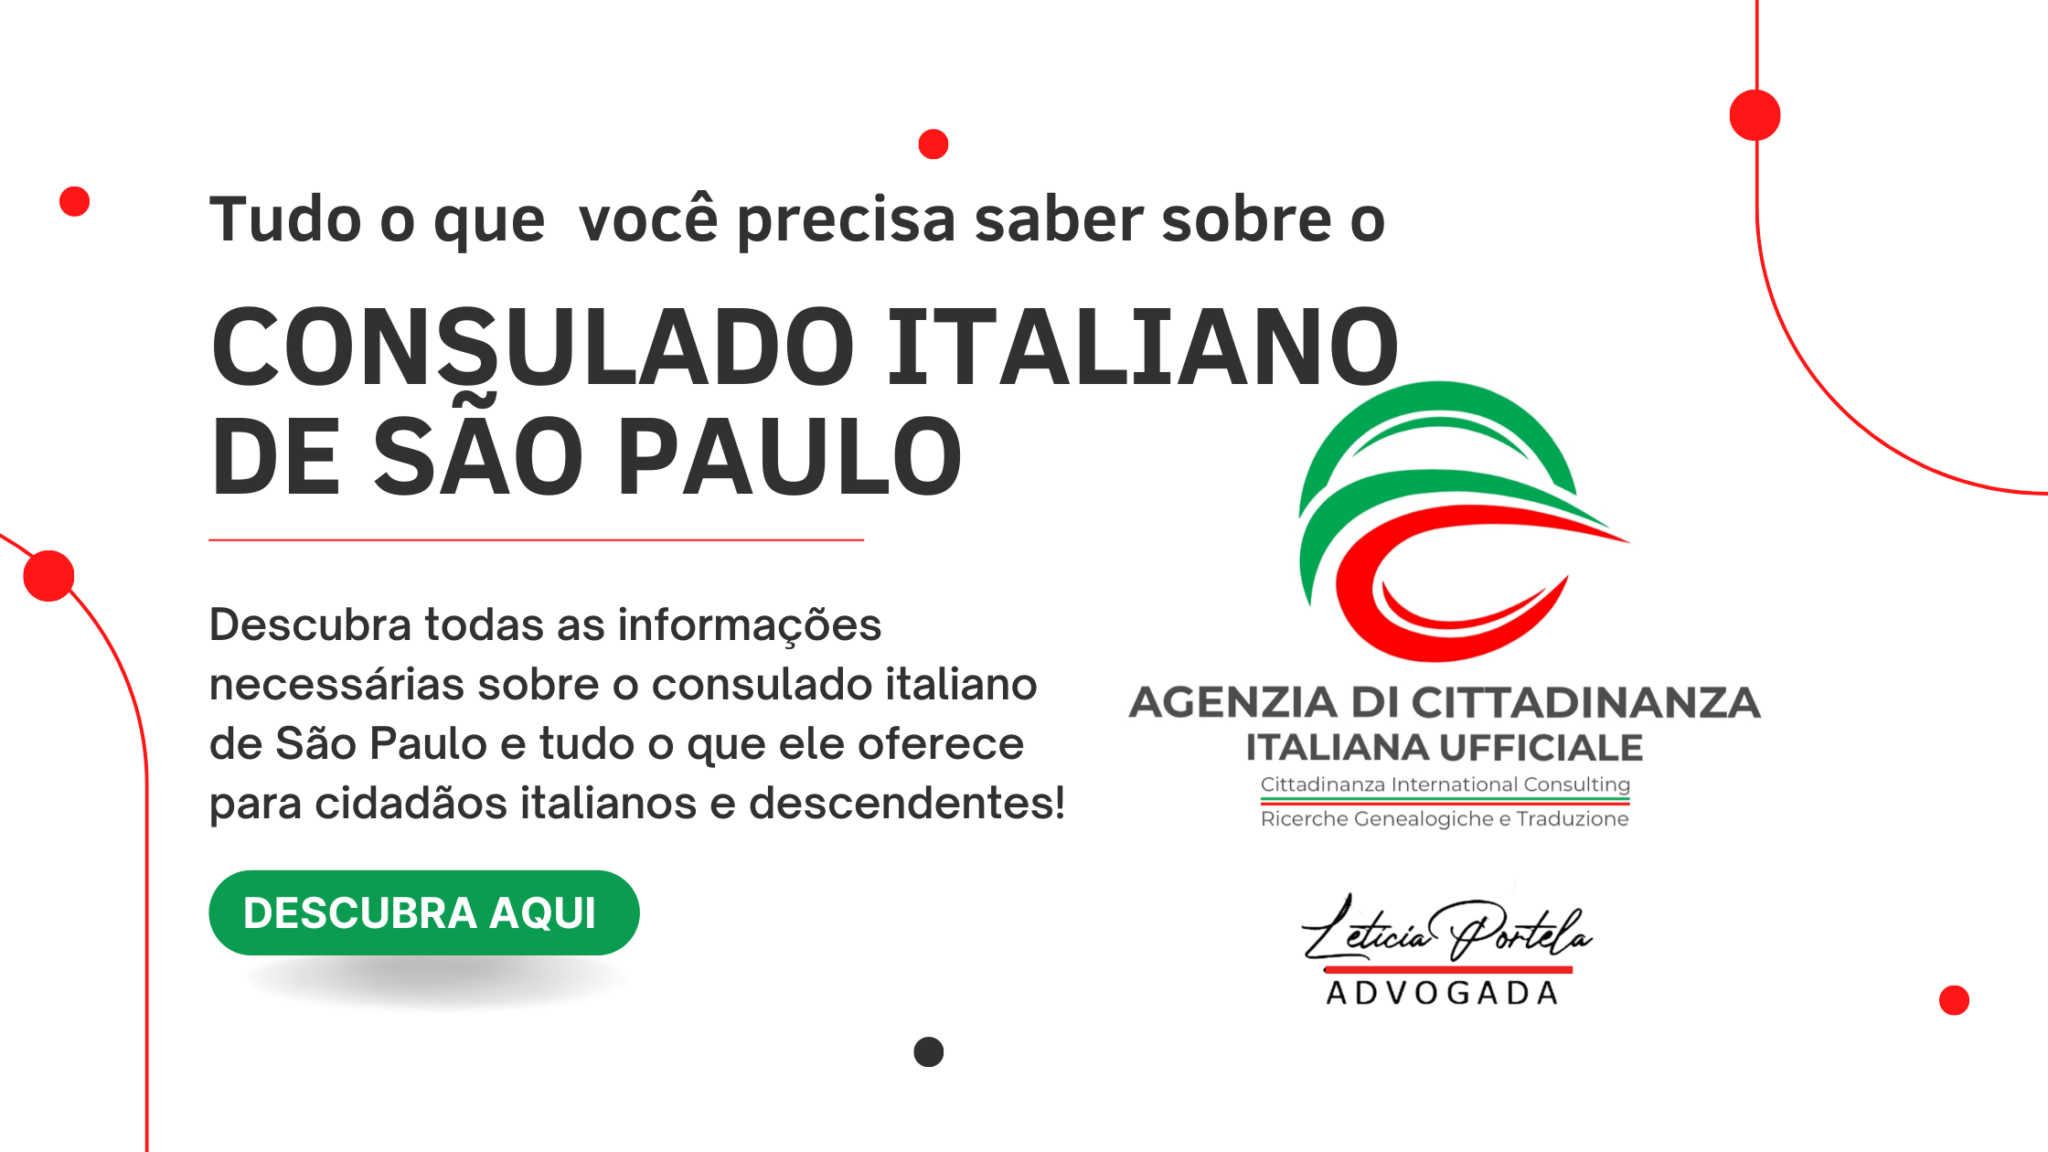 Tudo O Que Você Precisa Saber Sobre O Consulado Italiano De São Paulo Br 4176